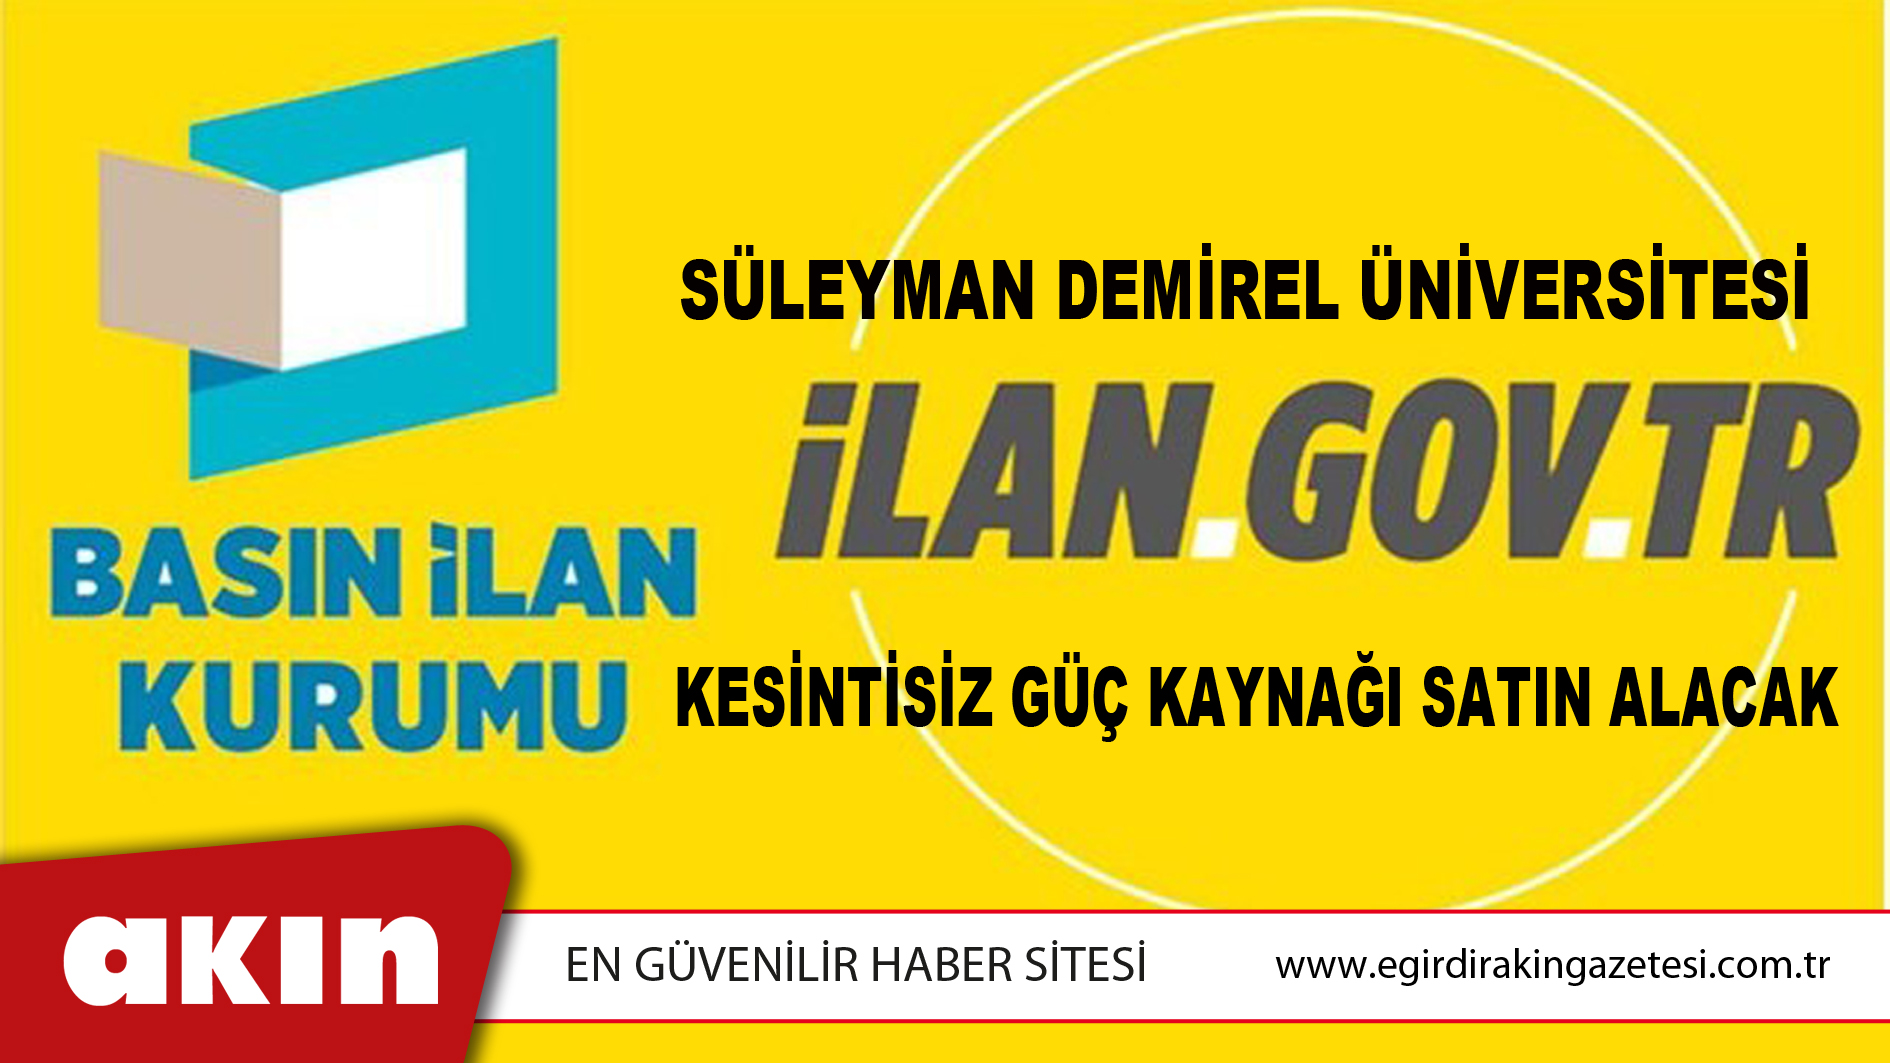 Süleyman Demirel Üniversitesi Kesintisiz Güç Kaynağı Satın Alacak